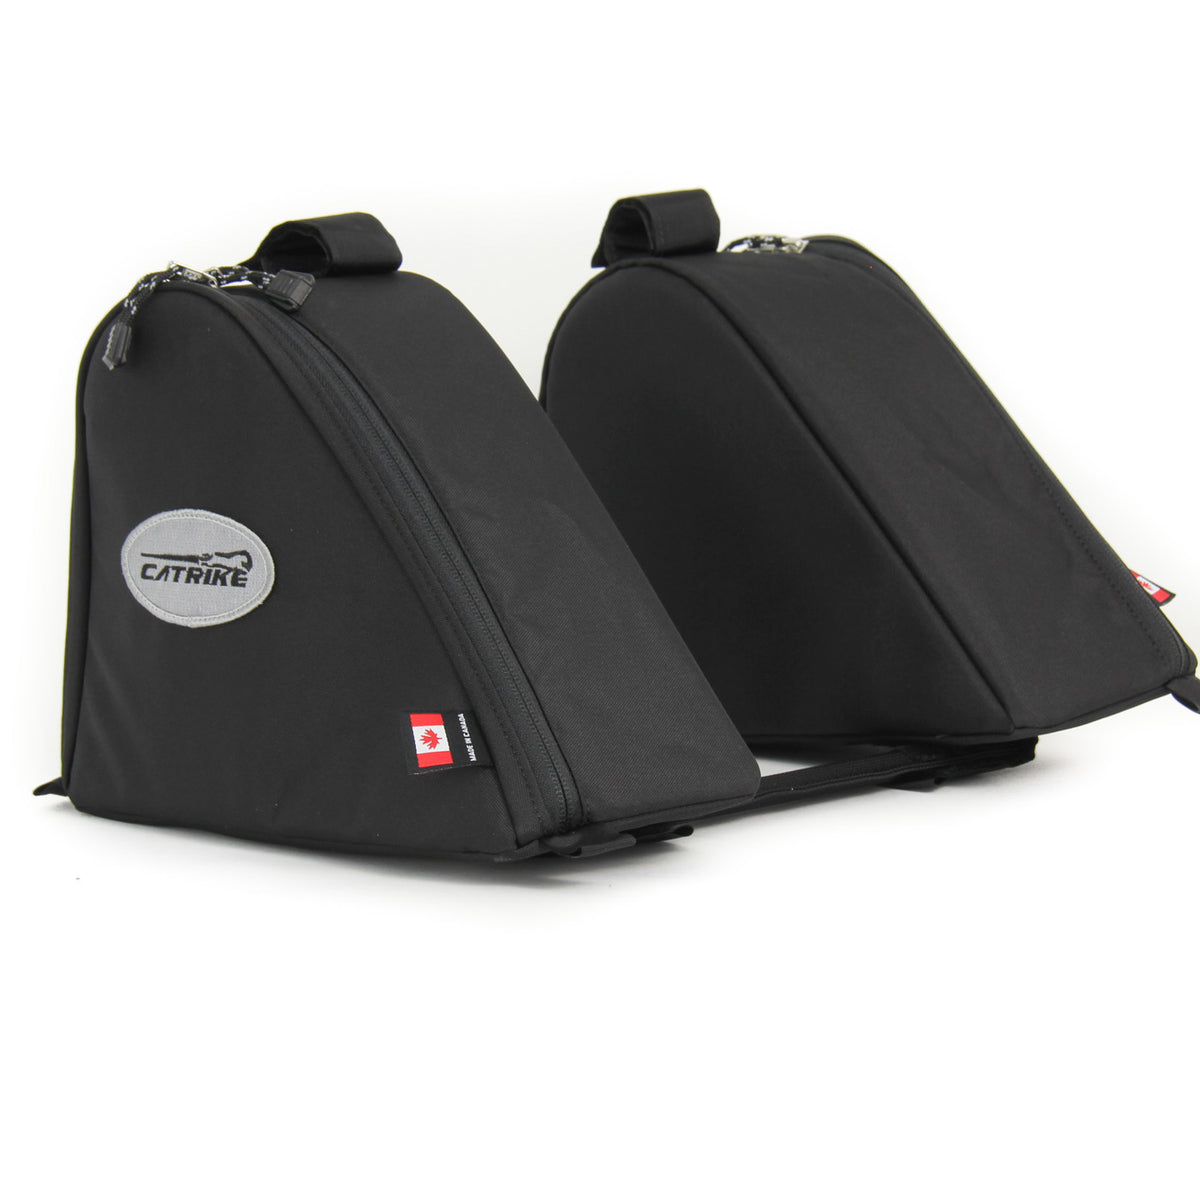 Recumbent Seat Bag – Arkel Bike Bags